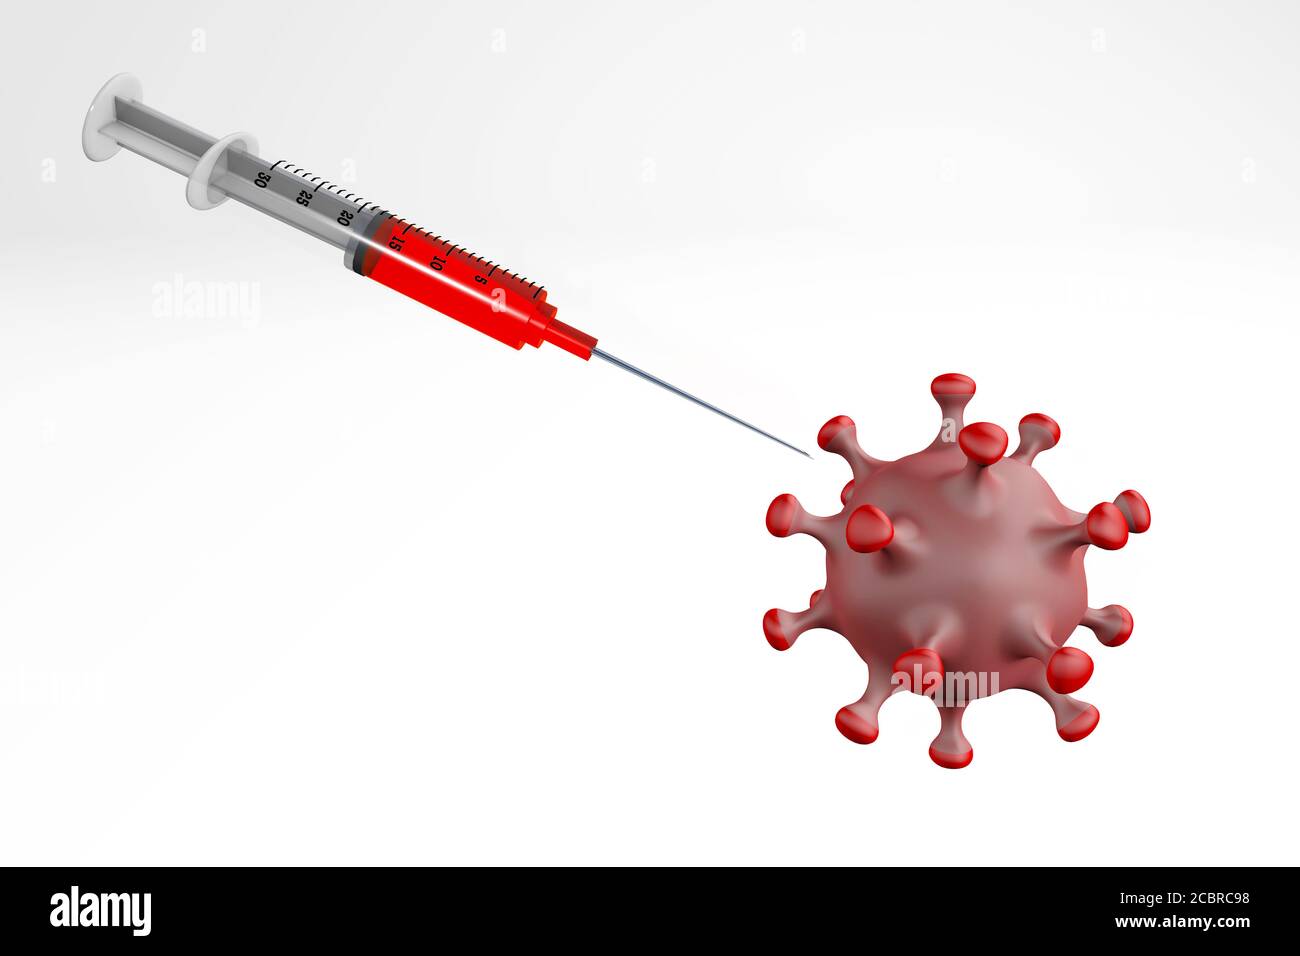 syringe vacinating corona 3d rendering isolated on white Stock Photo